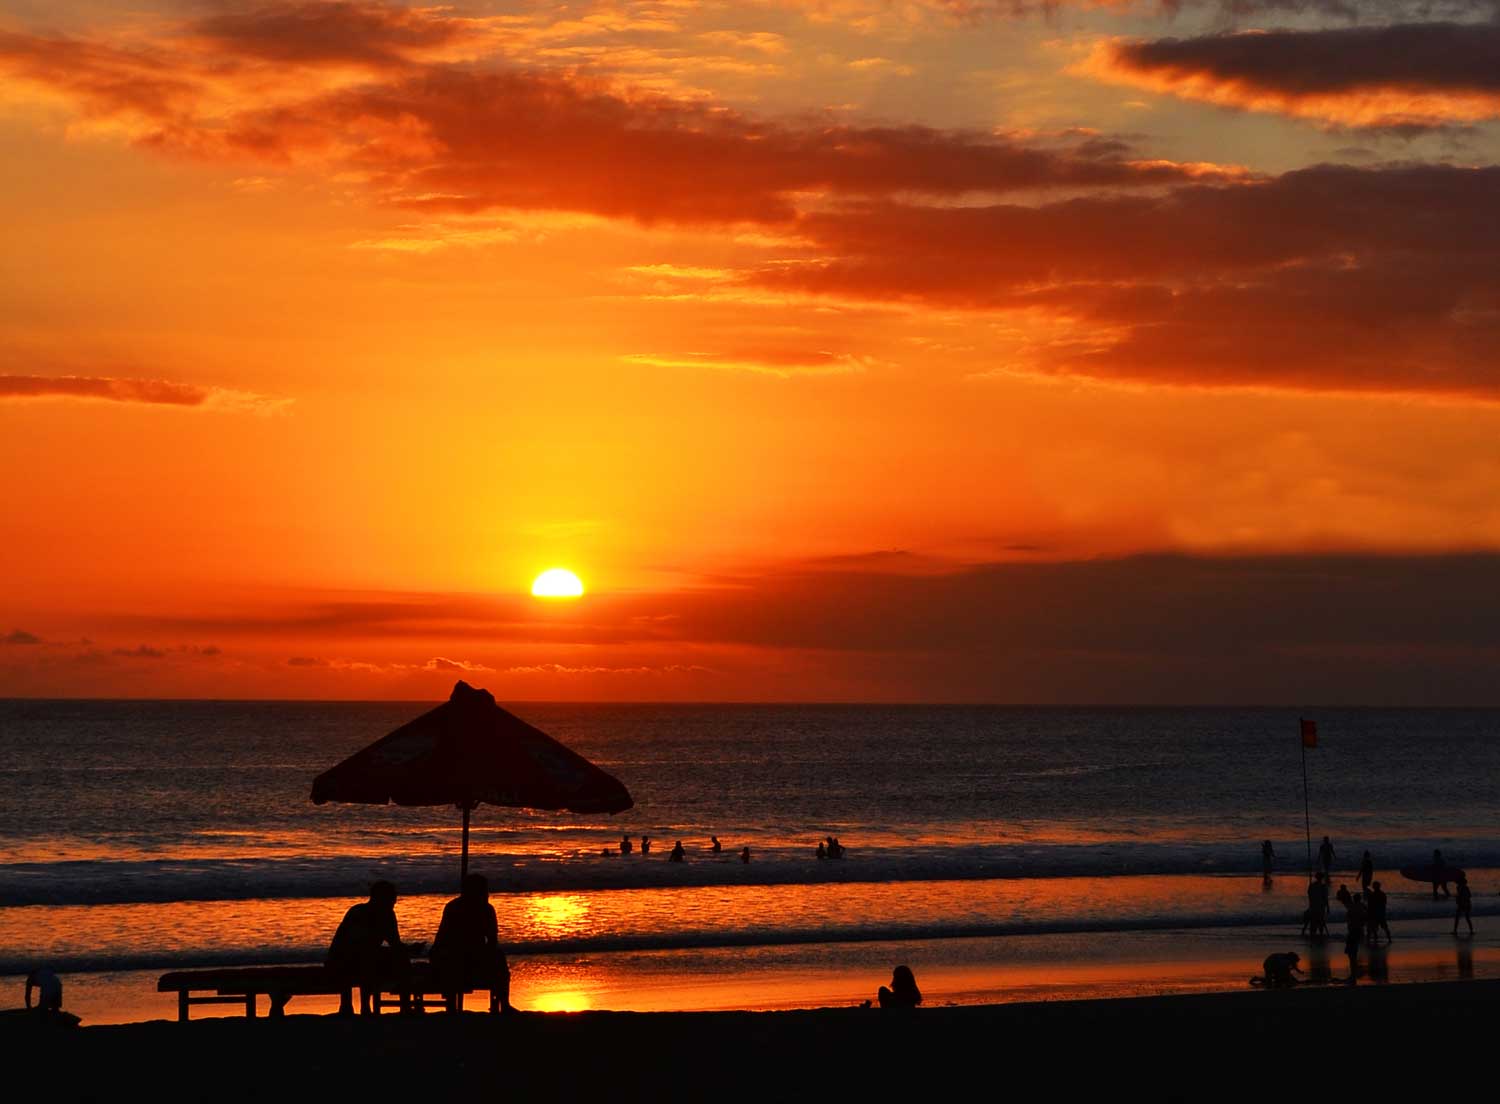 Foto Keren Sunset Di Pantai | Jaxelrod